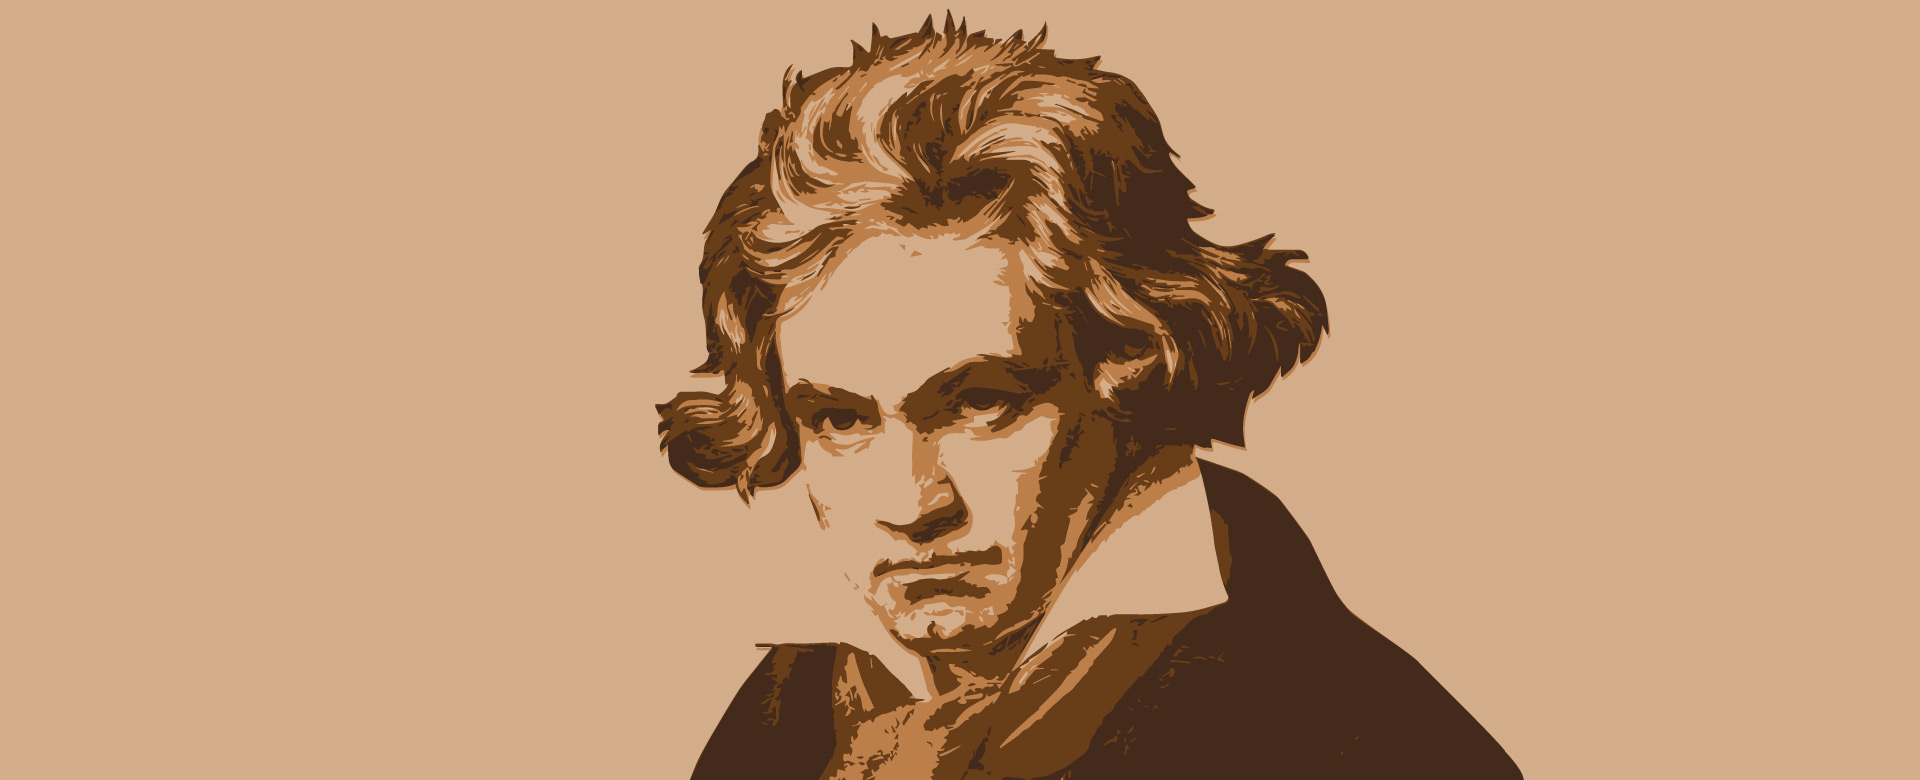 immagine di Beethoven